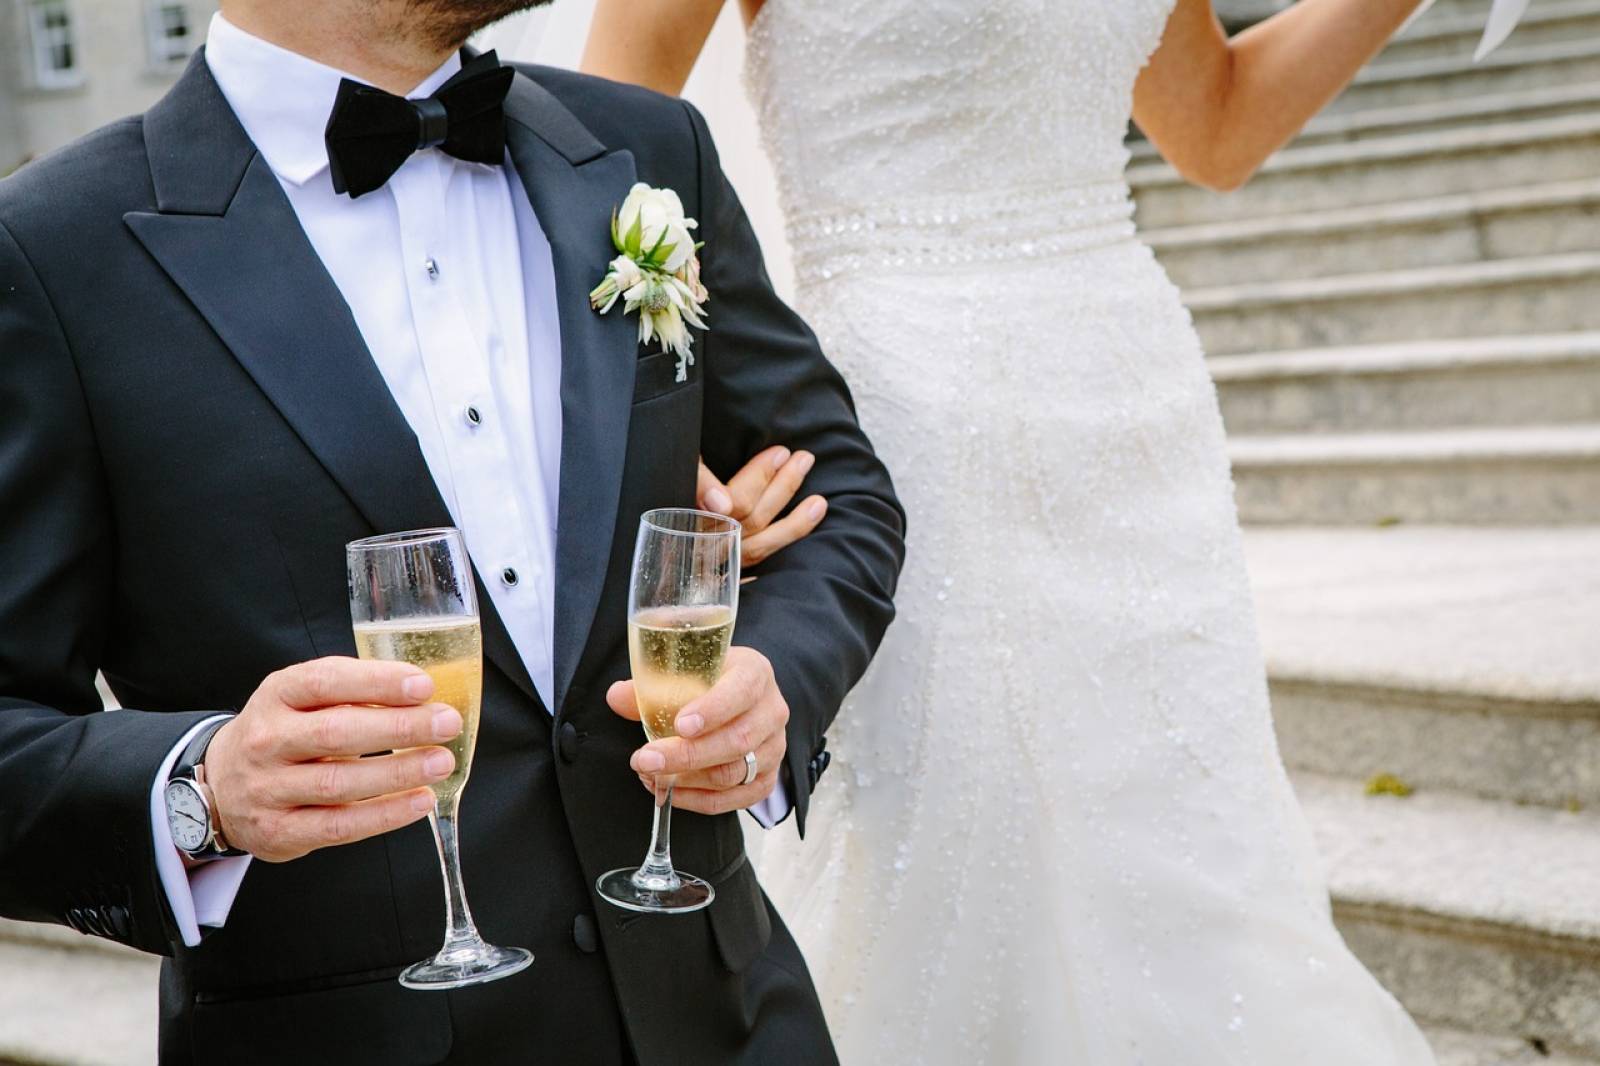 Flashop Vins vous propose de vous accompagner dans la sélection des vins et champagnes pour votre mariage!